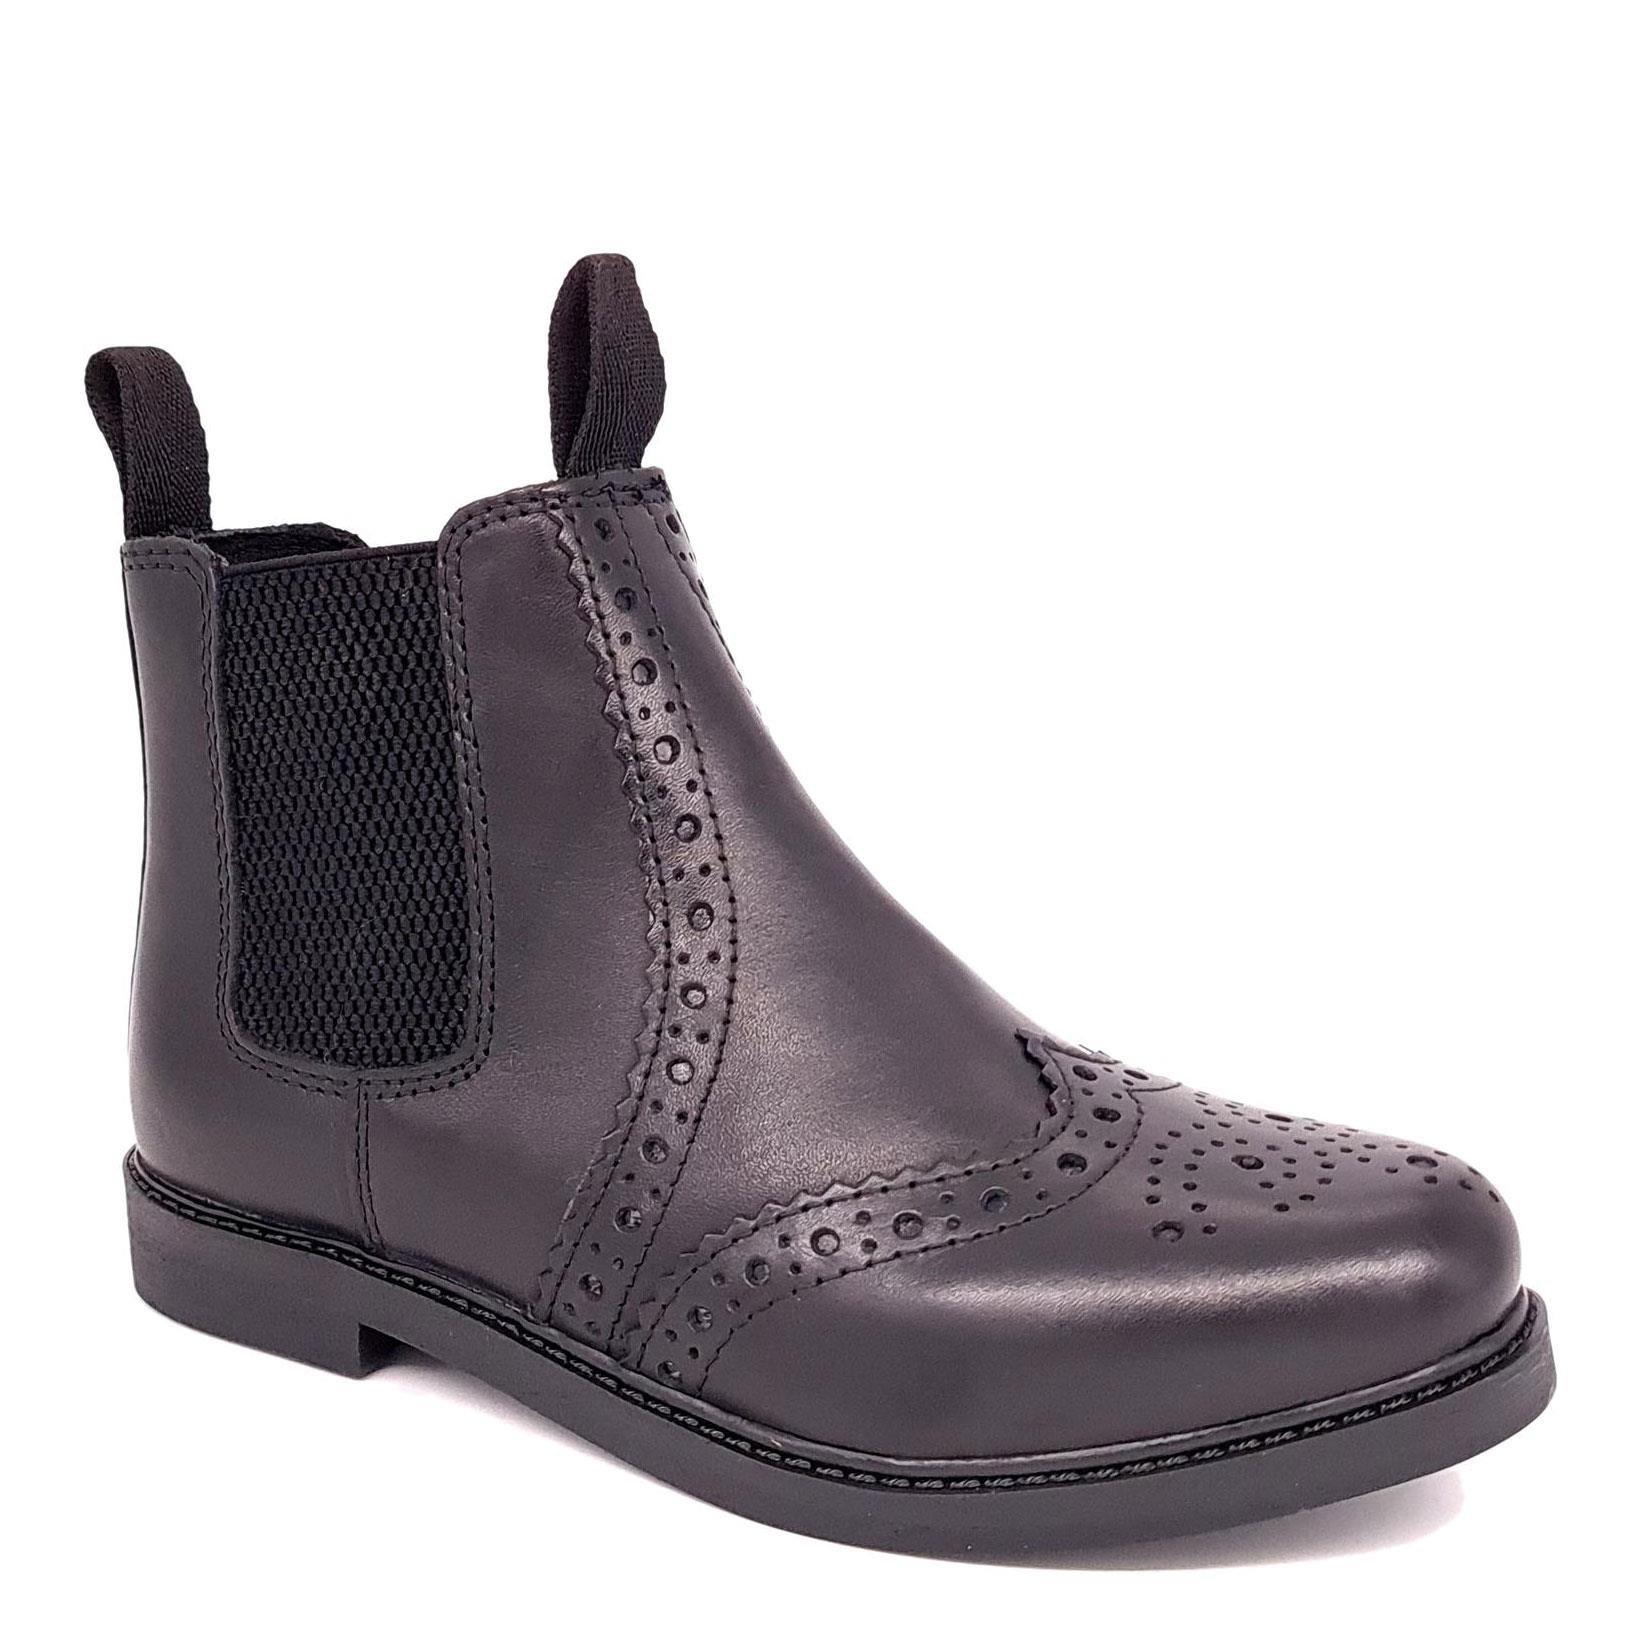 Кожаные ботинки челси с эффектом броги Cheltenham Frank James, черный кожаные туфли дерби броги parade frank james коричневый